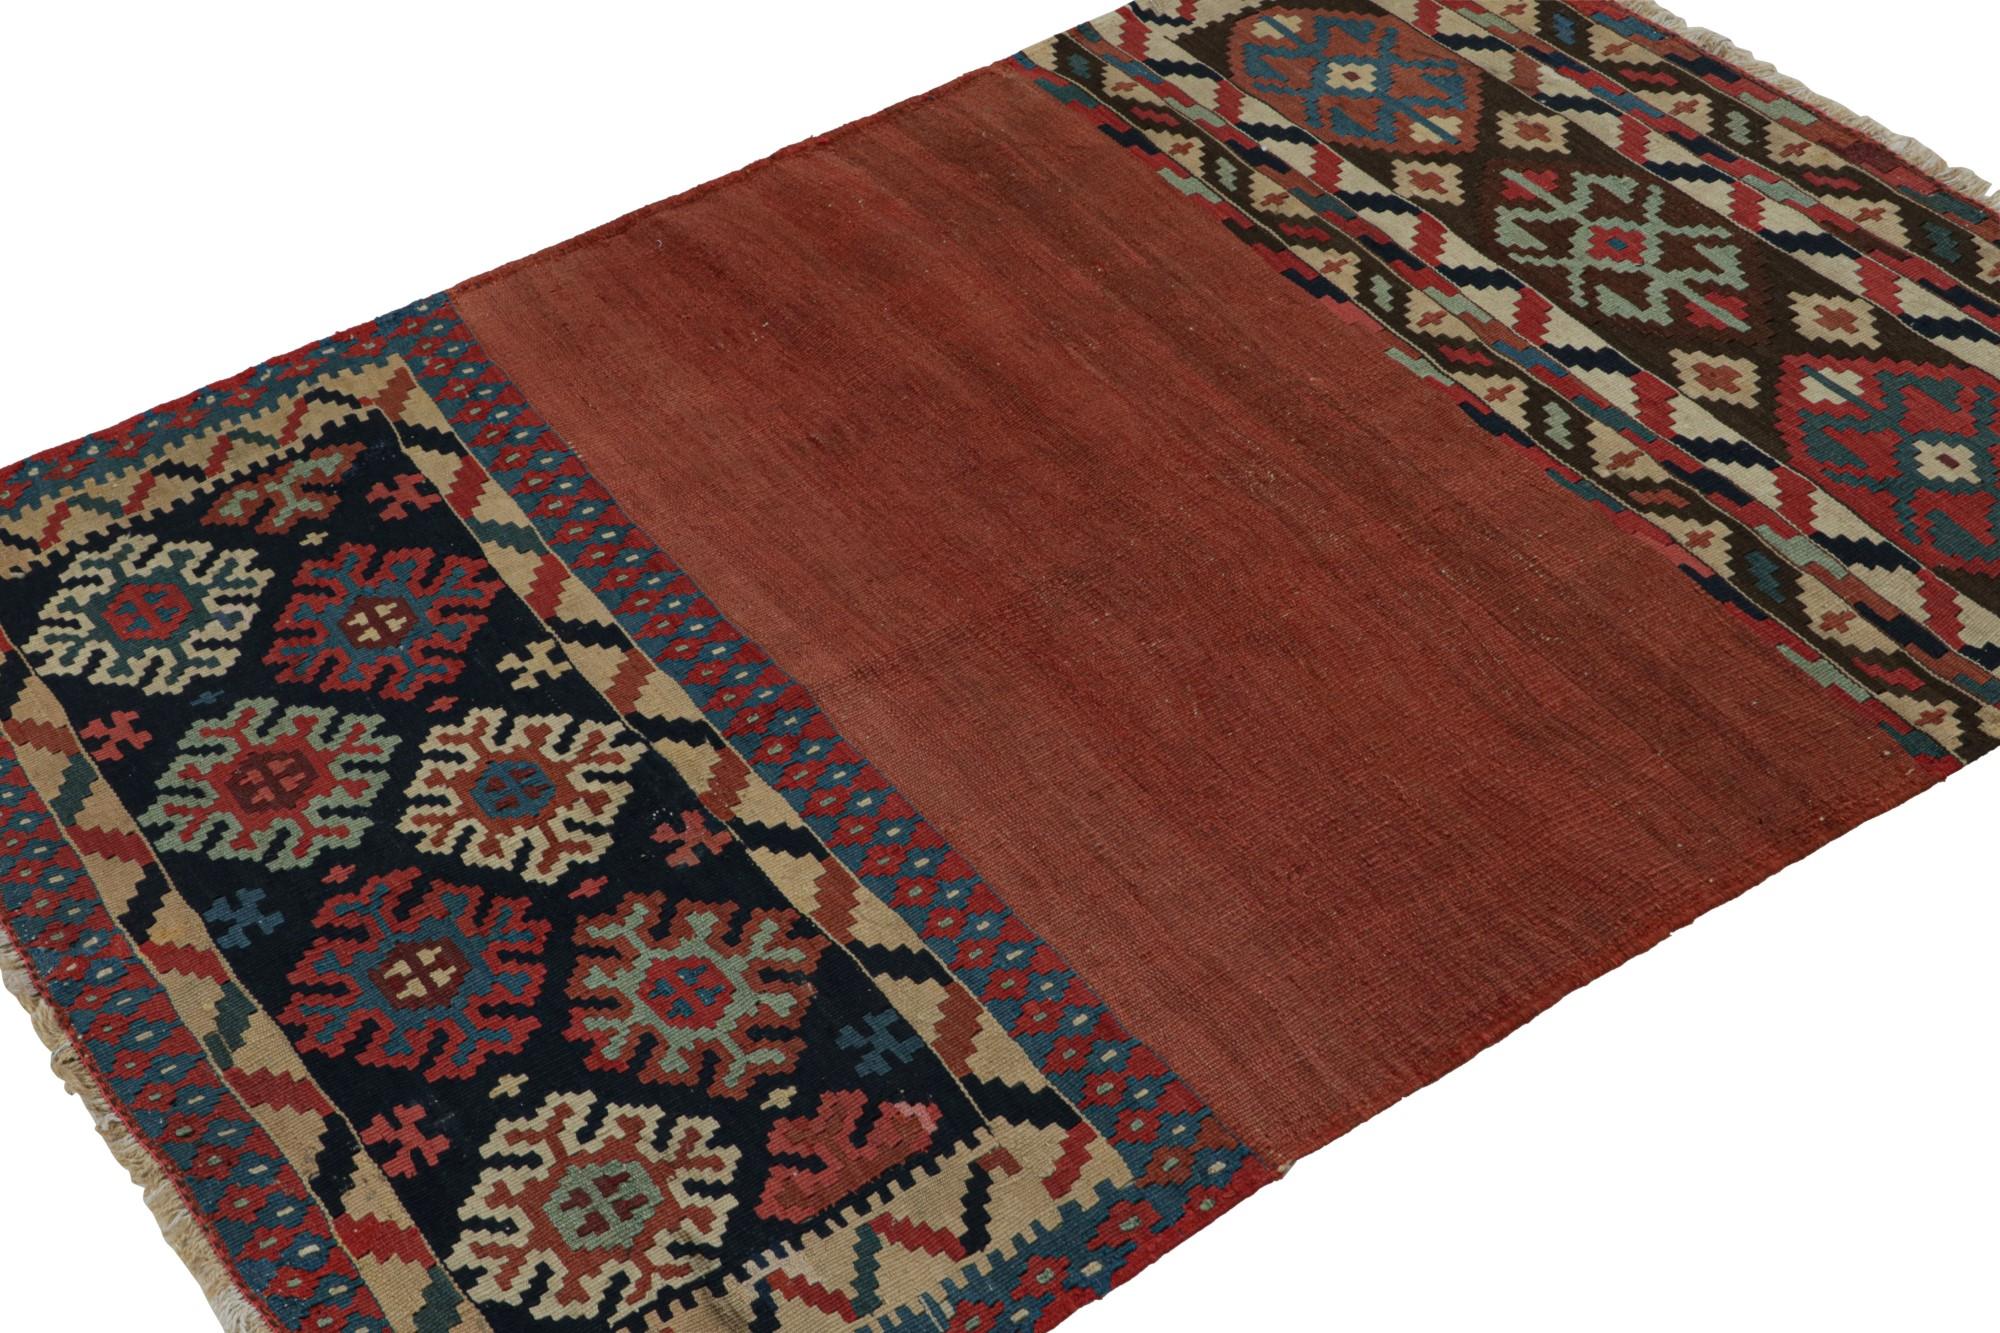 Noué à la main en laine, ce kilim tribal afghan 4x5 représente une nouvelle ligne de tapis tribaux dans la Collection Modern Classics de Rug & Kilim. Chaque pièce représente le travail de femmes tisseuses en Afghanistan, préservant ainsi la riche